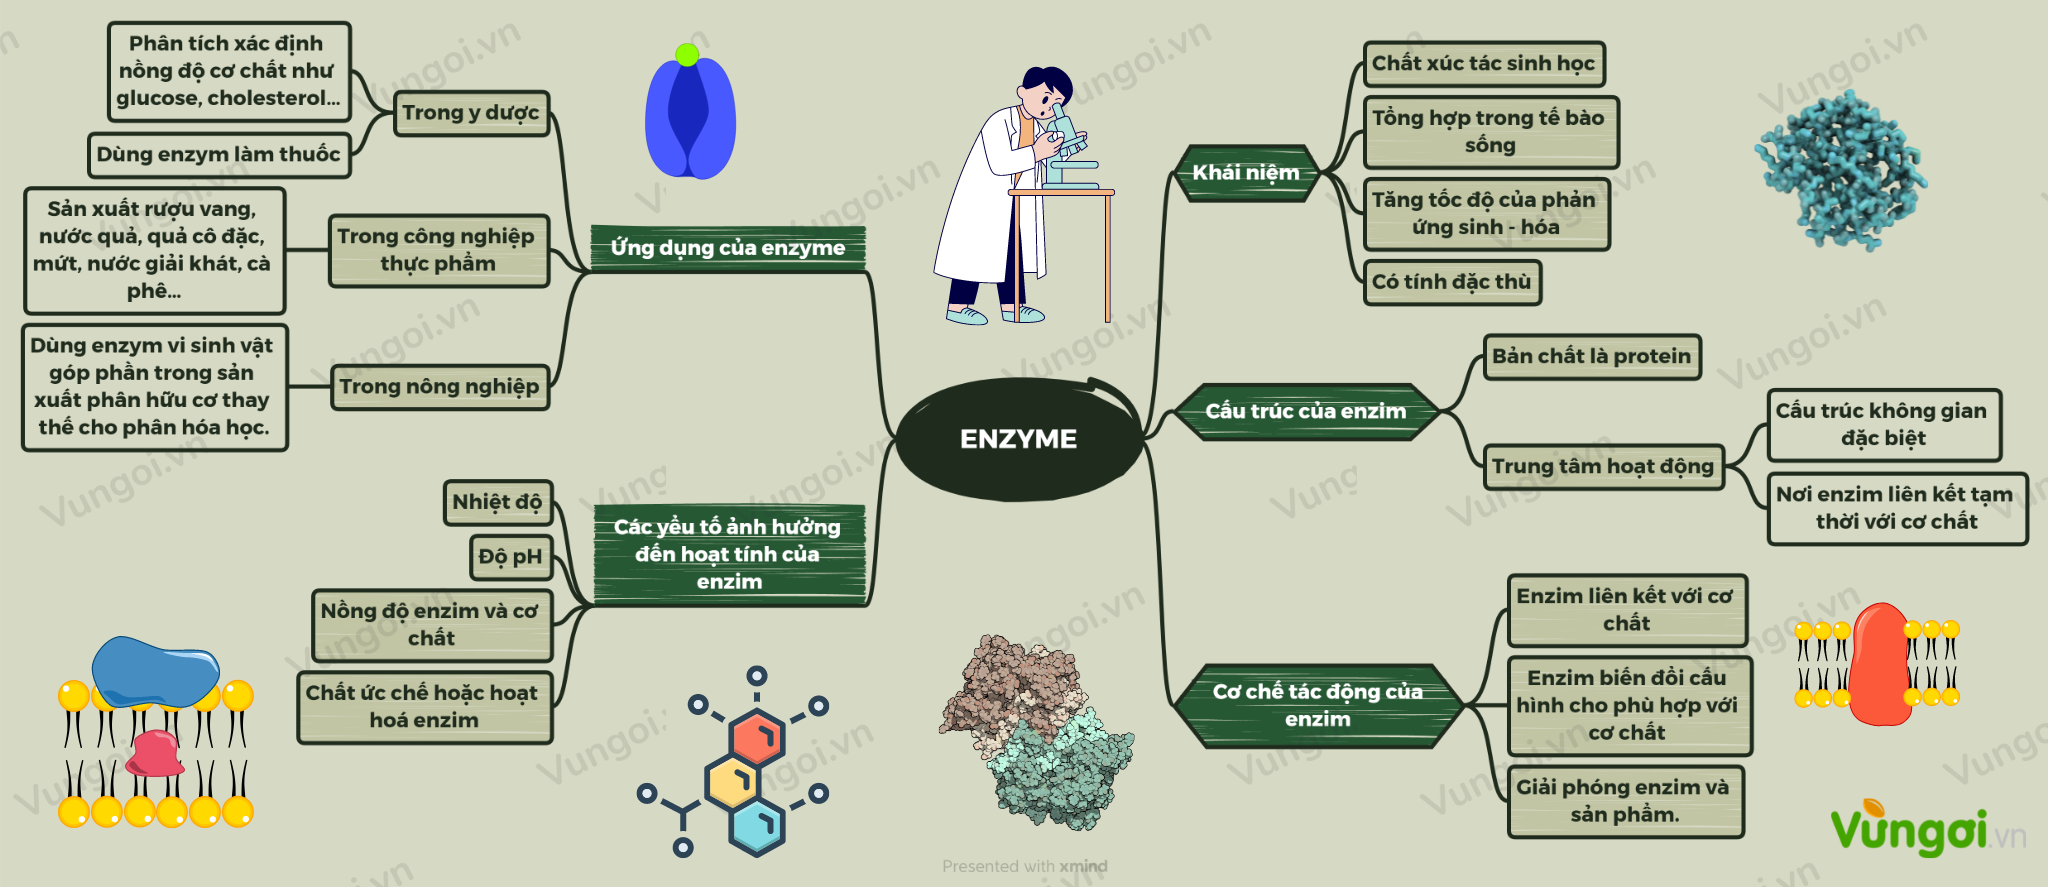 Enzyme là một trong những chủ đề quan trọng trong lĩnh vực sinh học. Sơ đồ tư duy là một công cụ hữu ích giúp bạn hiểu rõ hơn về enzyme và các quá trình sinh hóa trong cơ thể. Hãy xem ảnh để hiểu thêm về sơ đồ tư duy và enzyme.